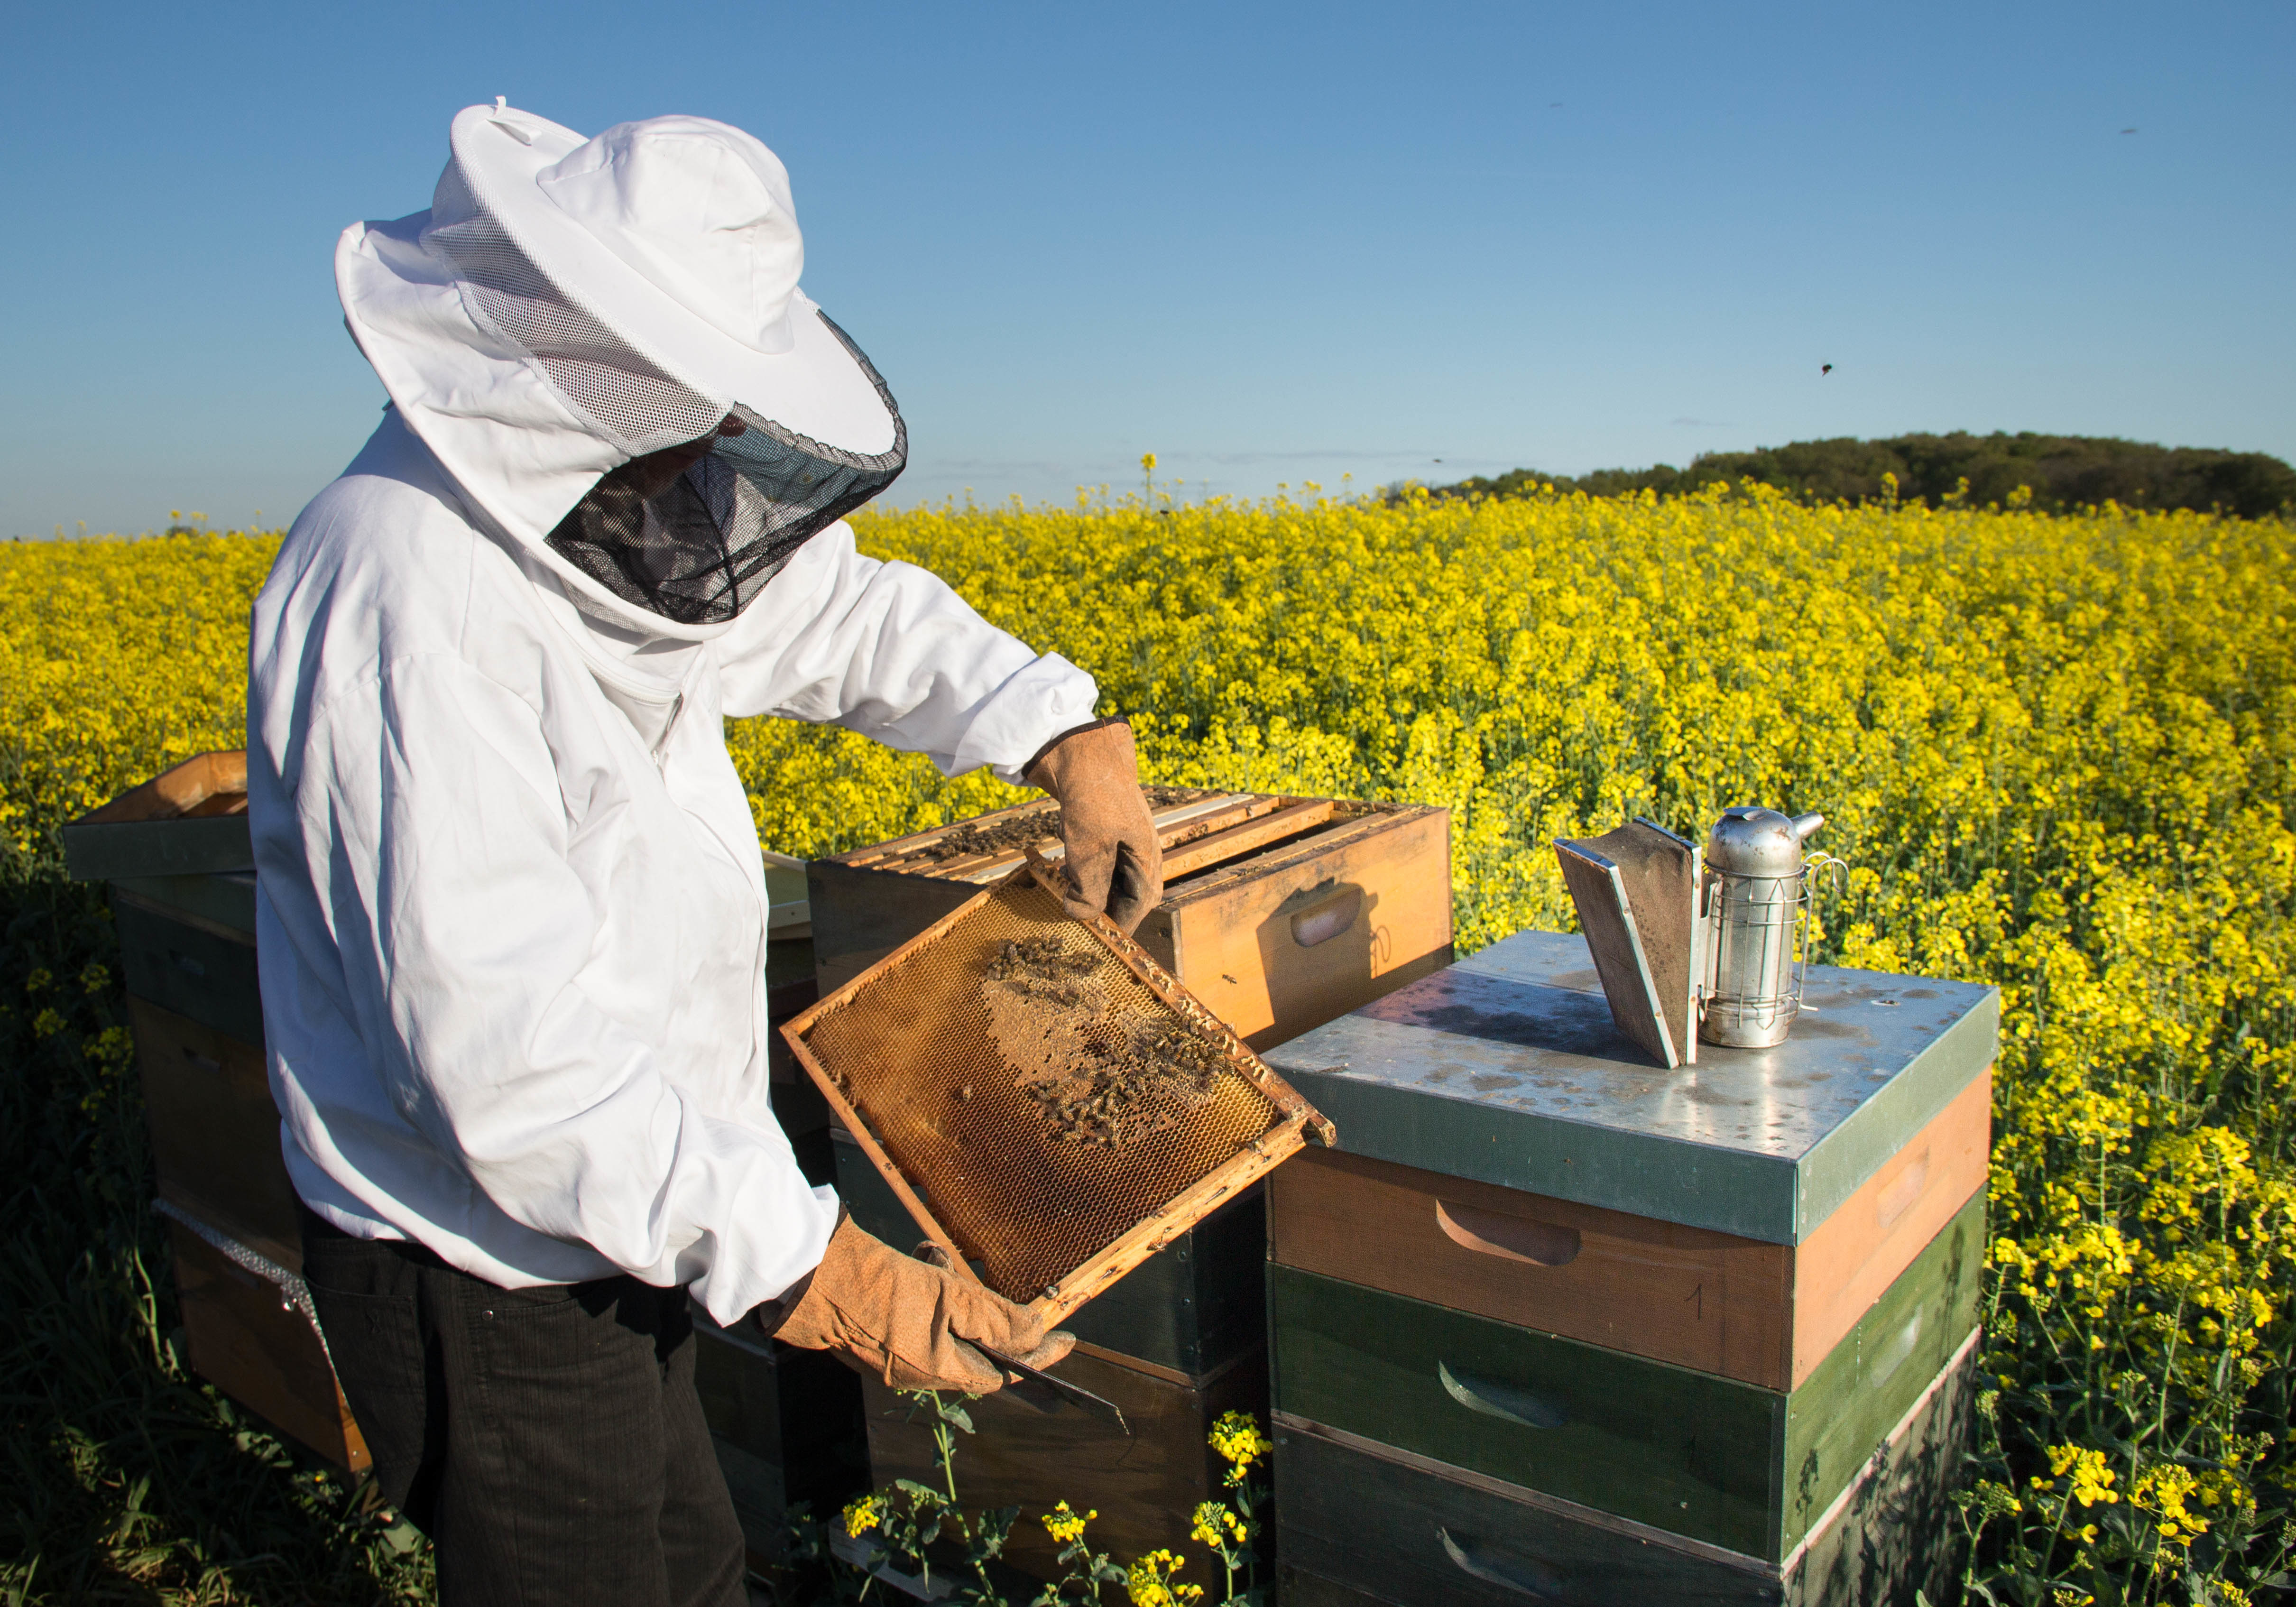 Imker für die Bestäubung der Natur mit Bienen